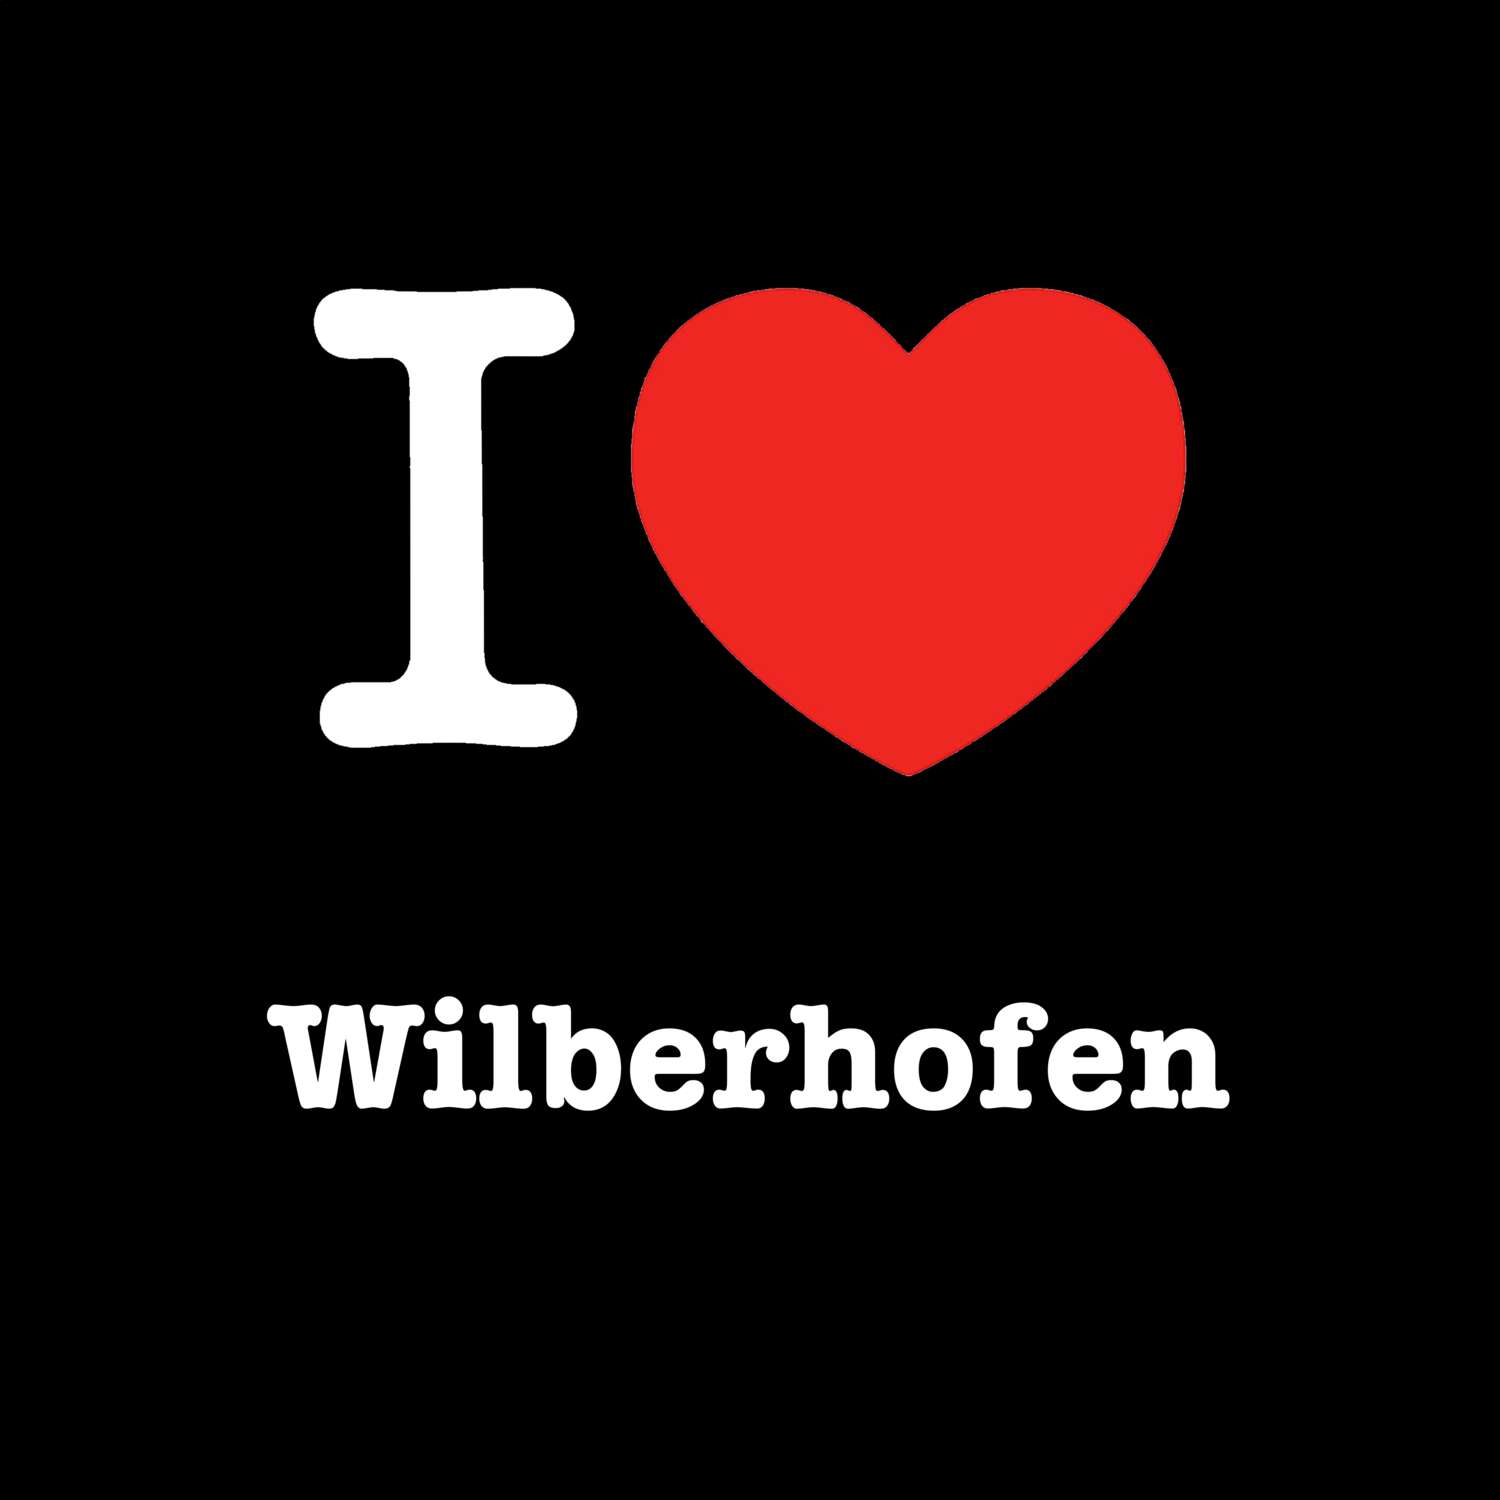 Wilberhofen T-Shirt »I love«